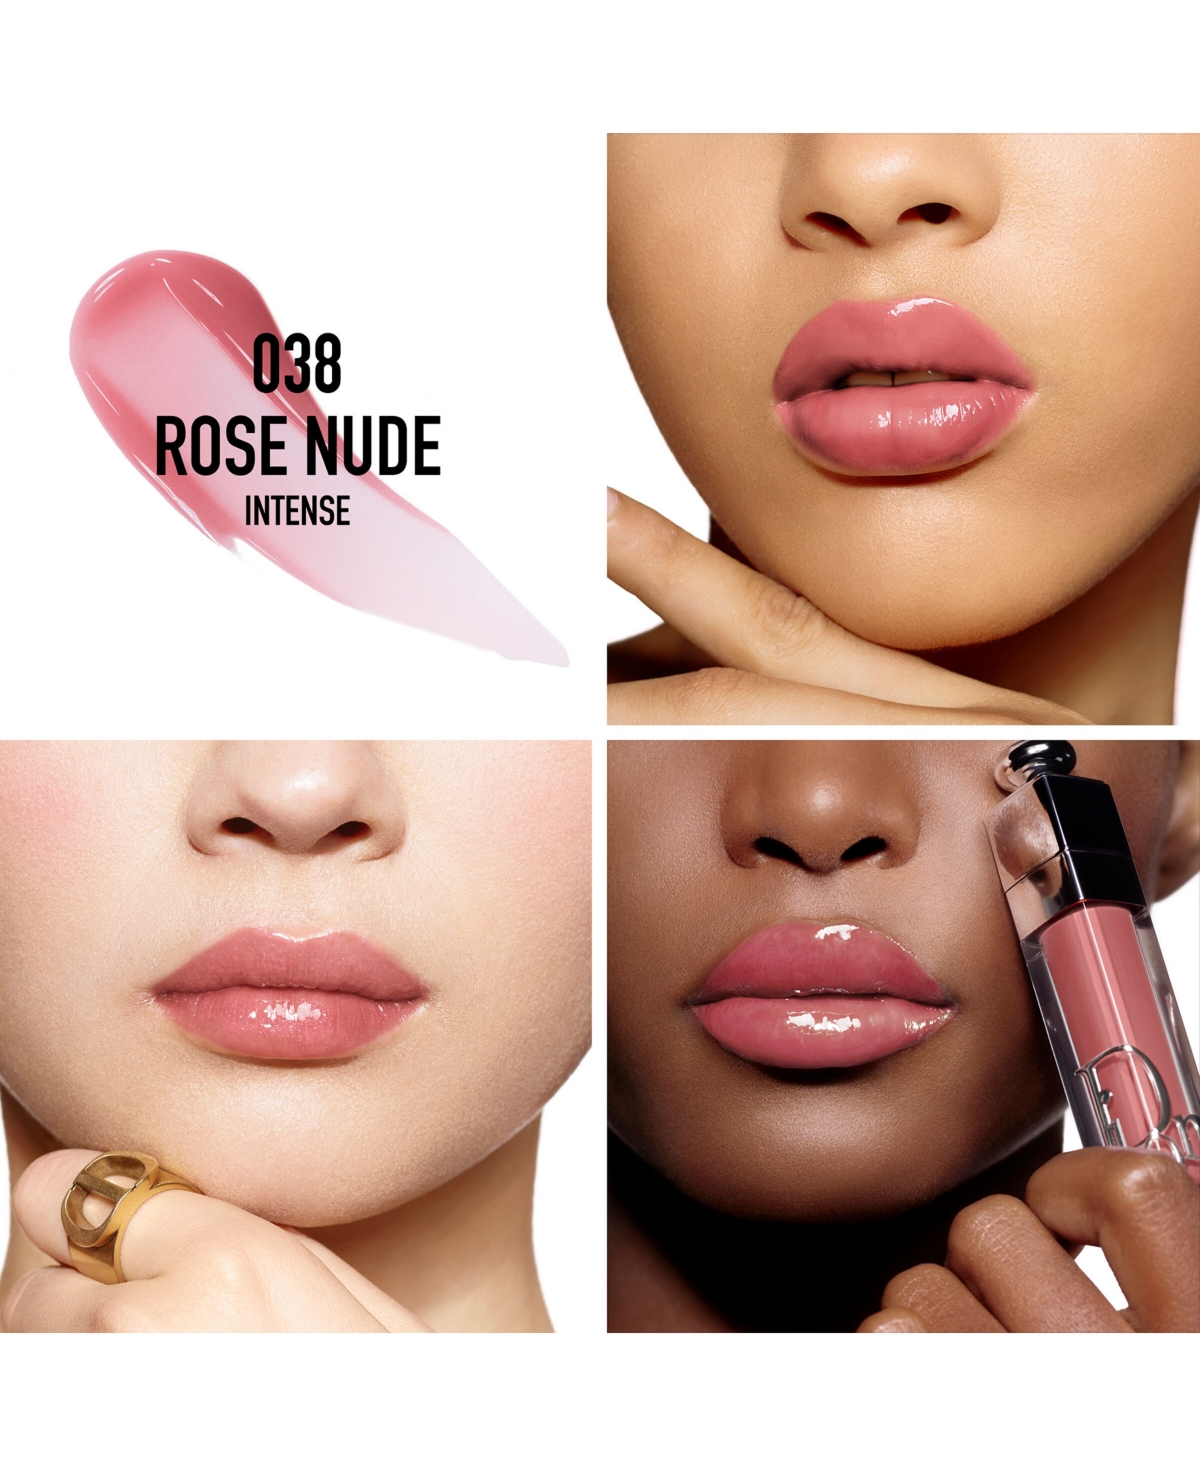 Shop Dior 3-pc. Addict Lip Essentials Makeup Set In No Color